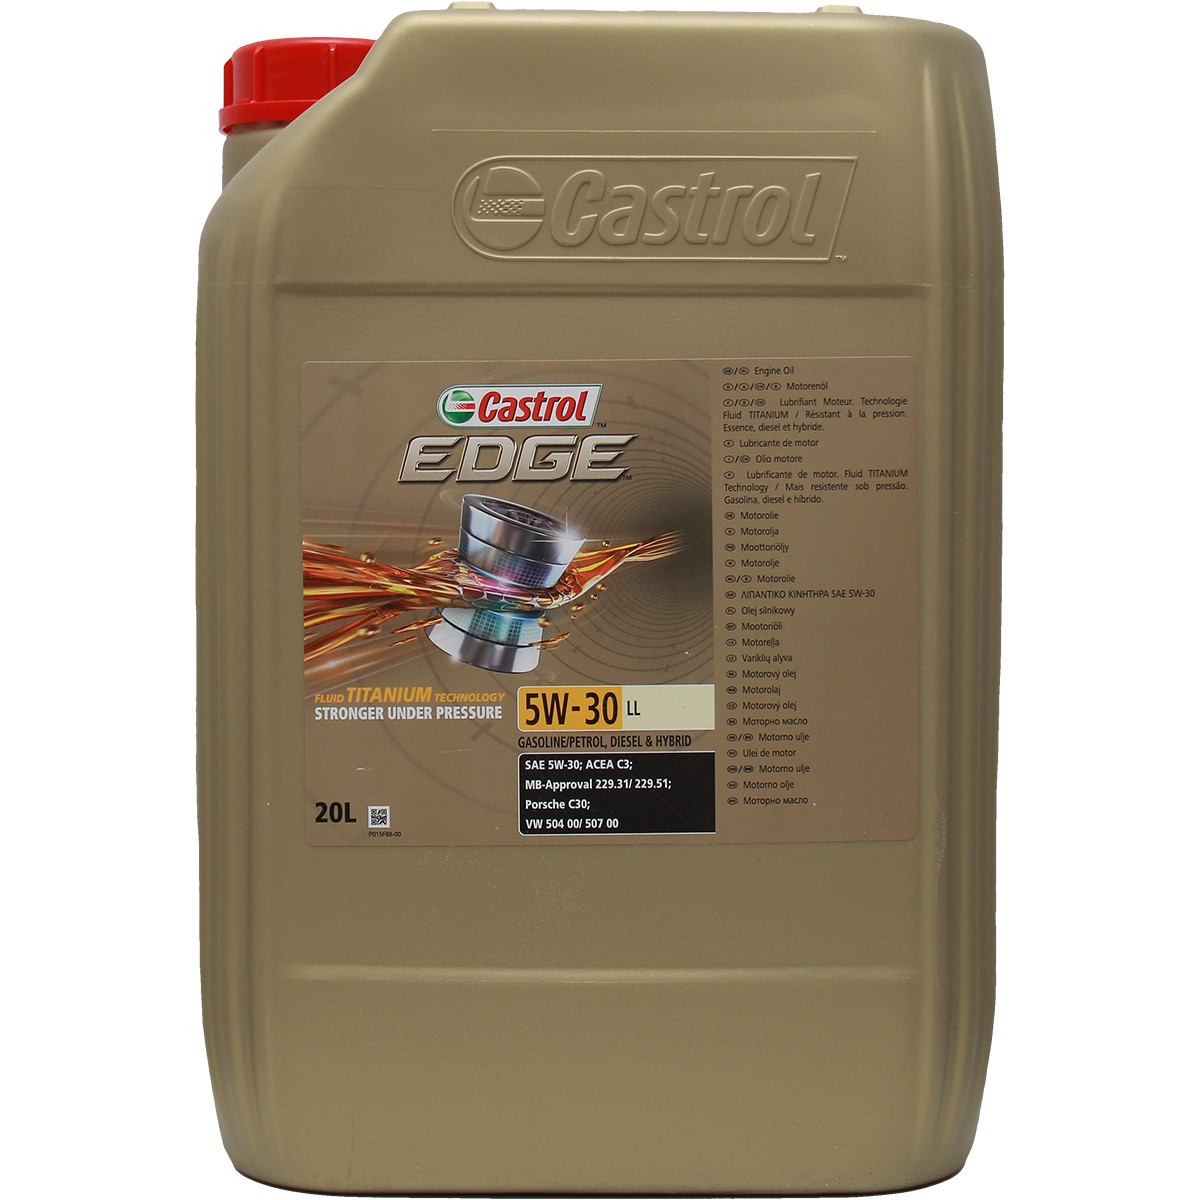 CASTROL 5W30 Longlife Diesel und Benzin vollsynthetisches und